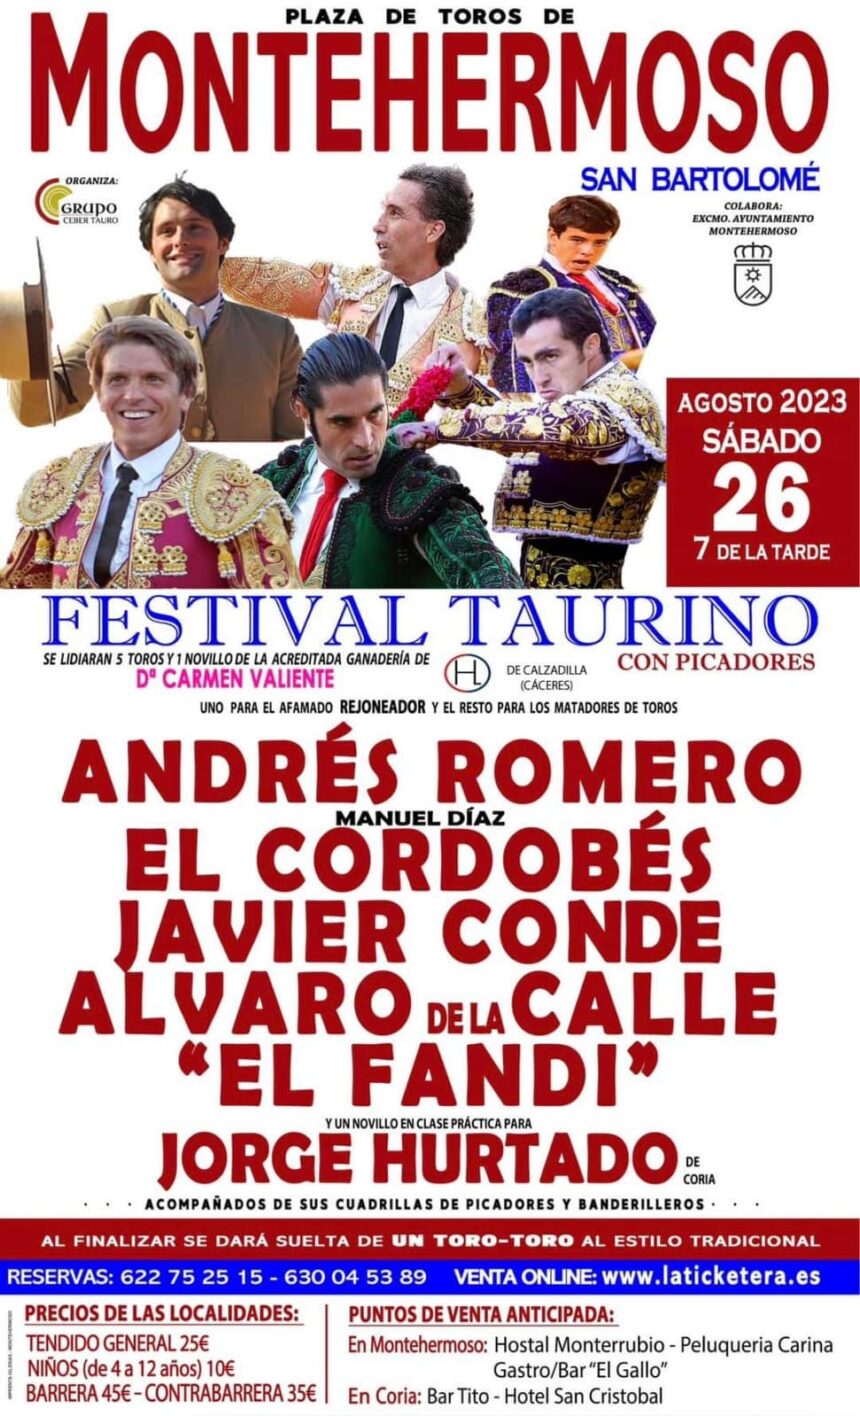 Festival taurino con picadores en Montehermoso